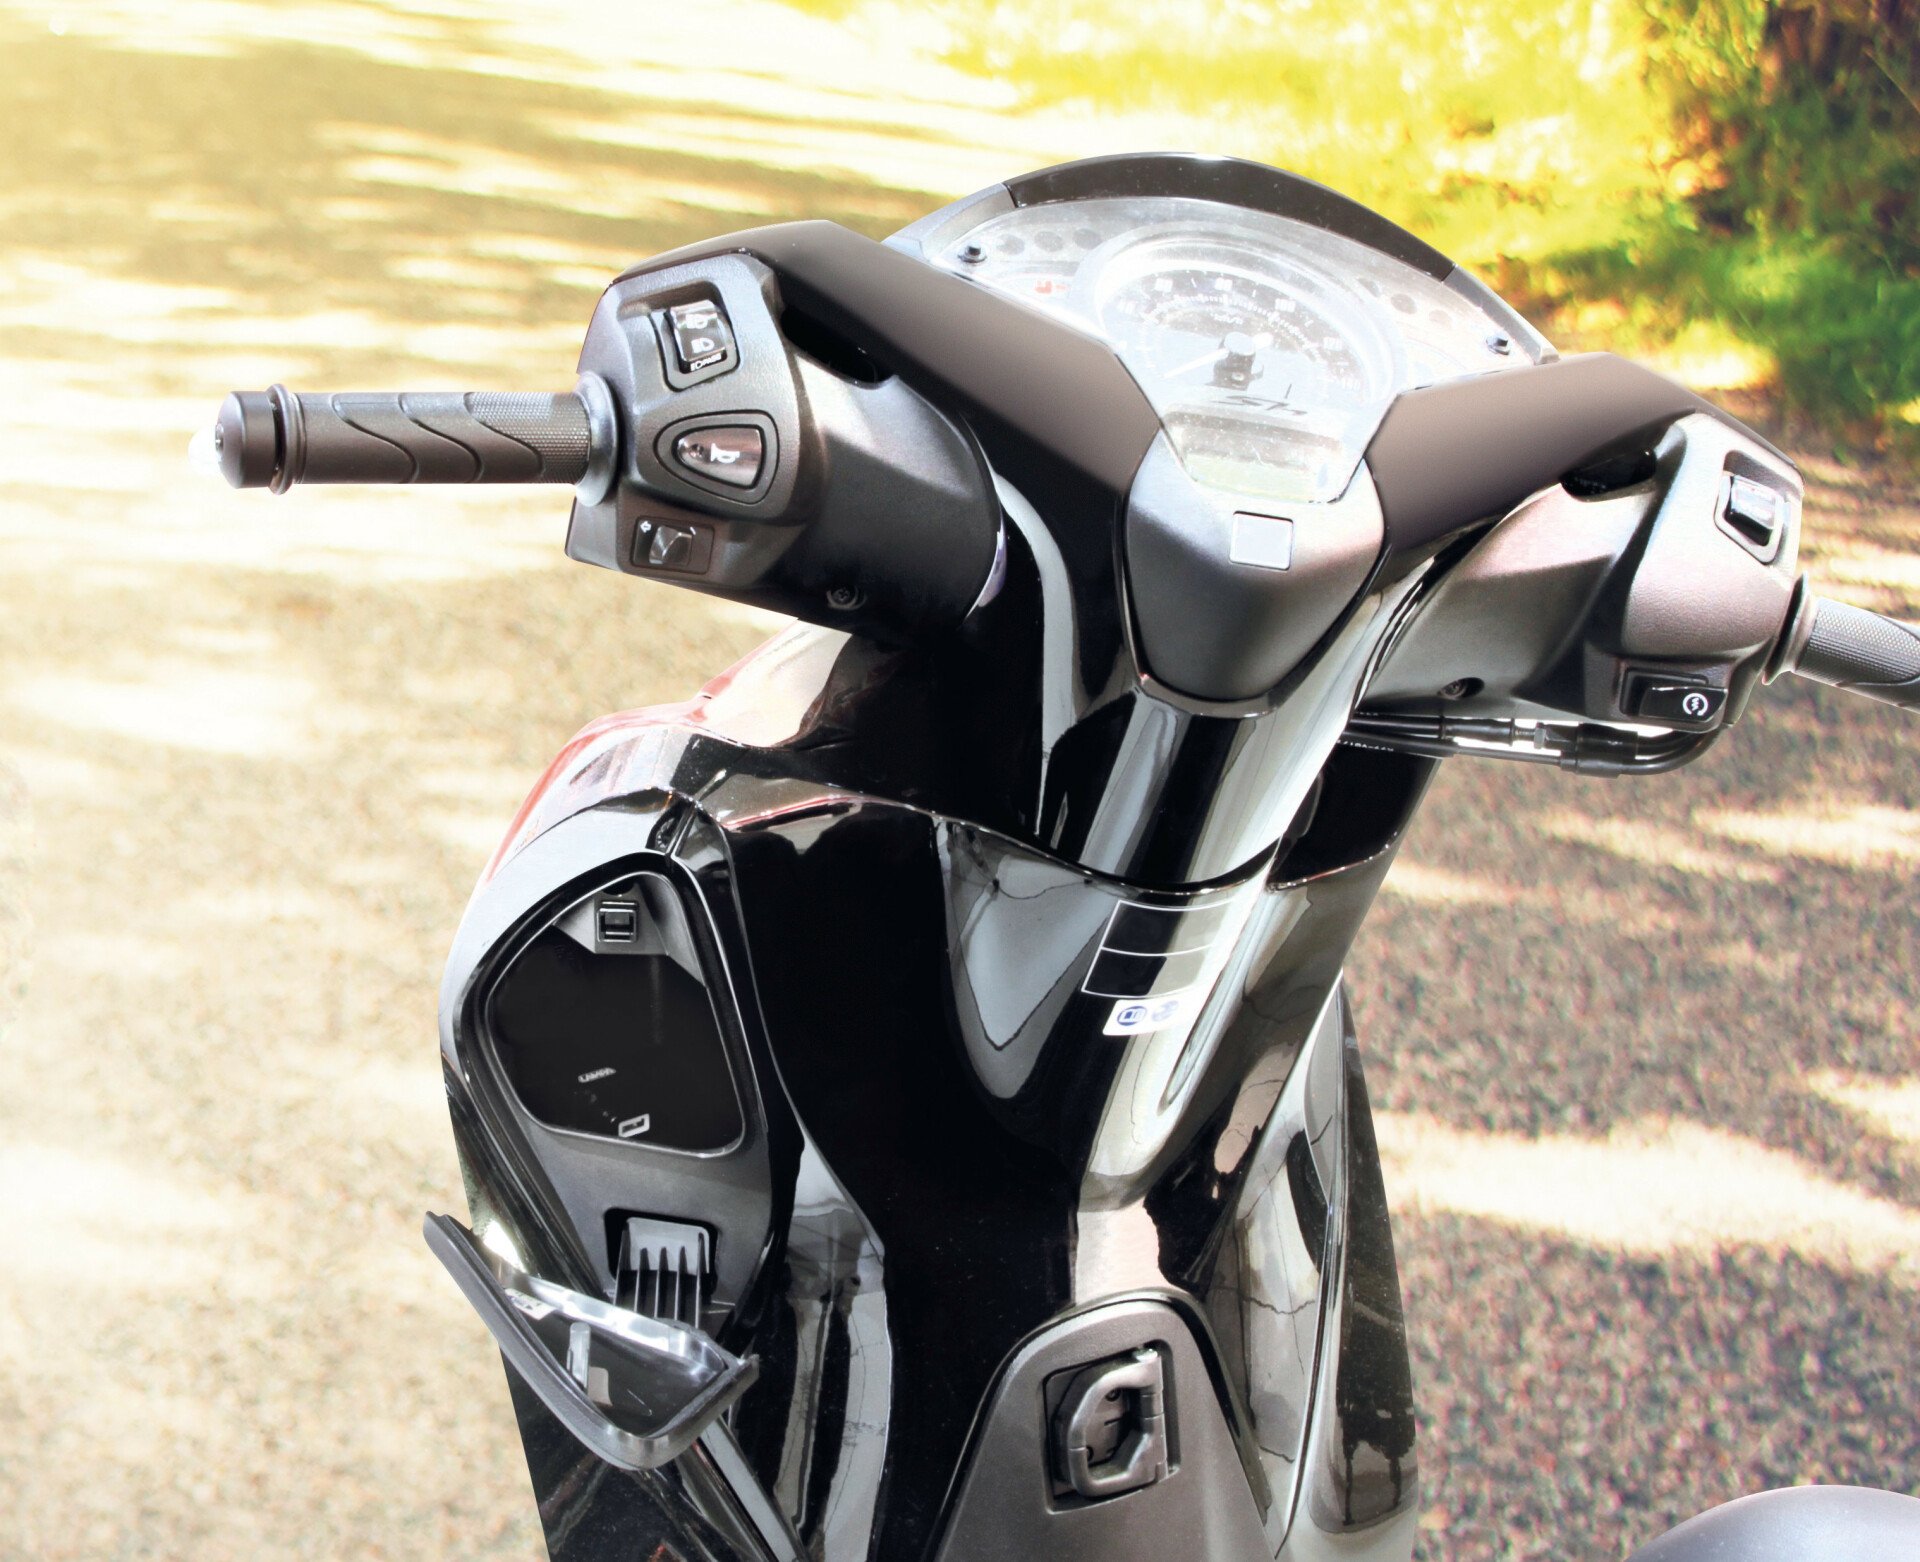 Incarcator motocicleta USB-Fix Omega fixare cu suruburi 12/24V - 2400mA thumb